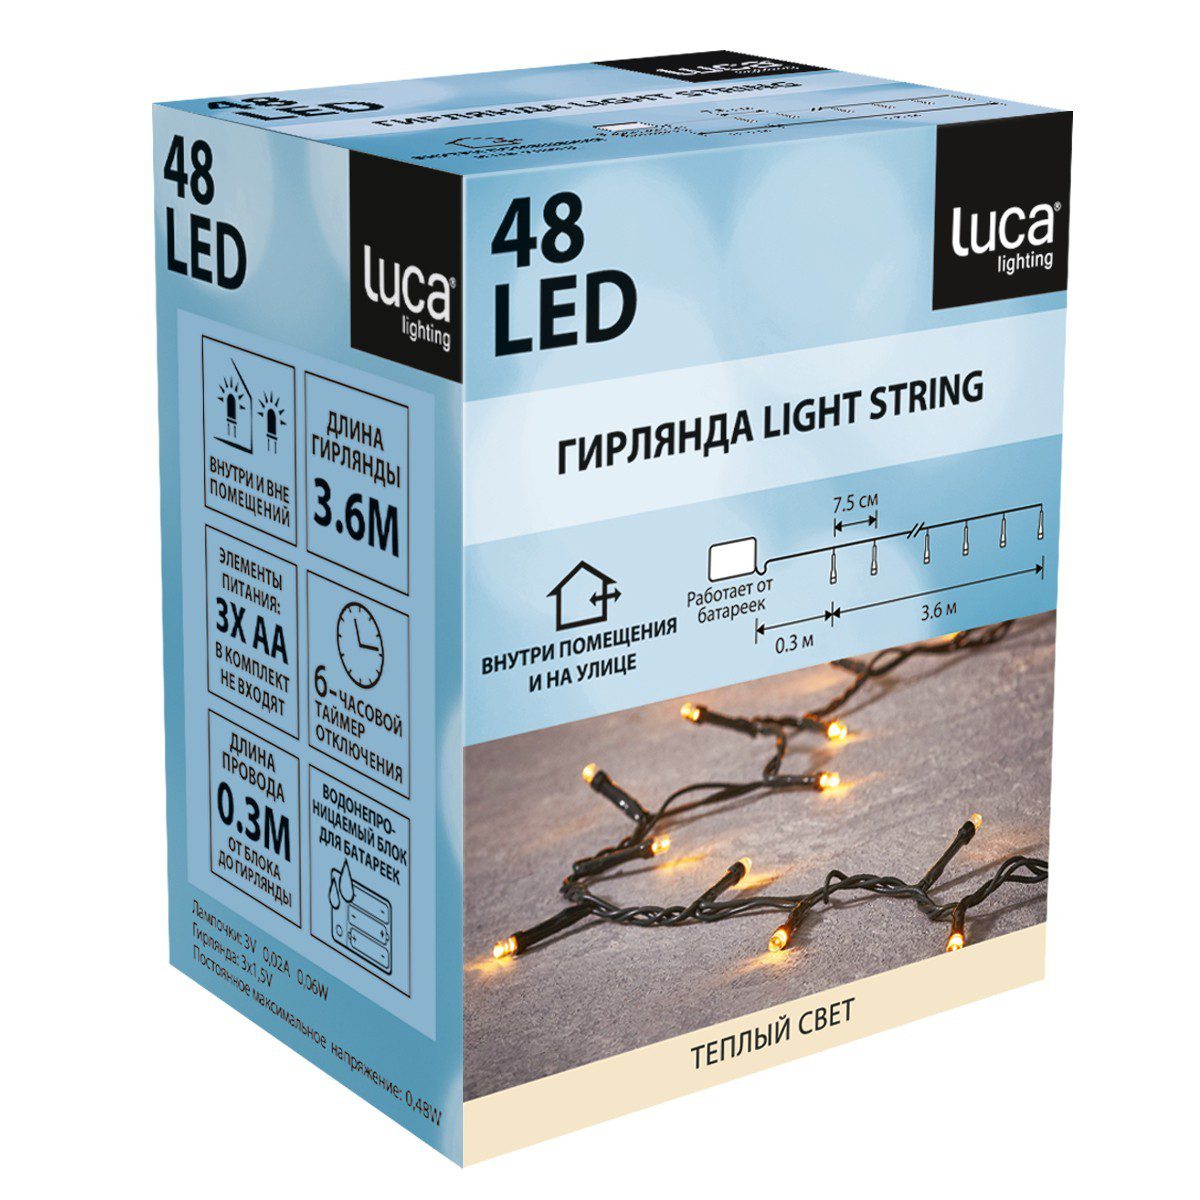 Гирлянда на батарейках Luca Lighting теплый свет с таймером отключения 6 часов (48 ламп, длина гирлянды 360 см)